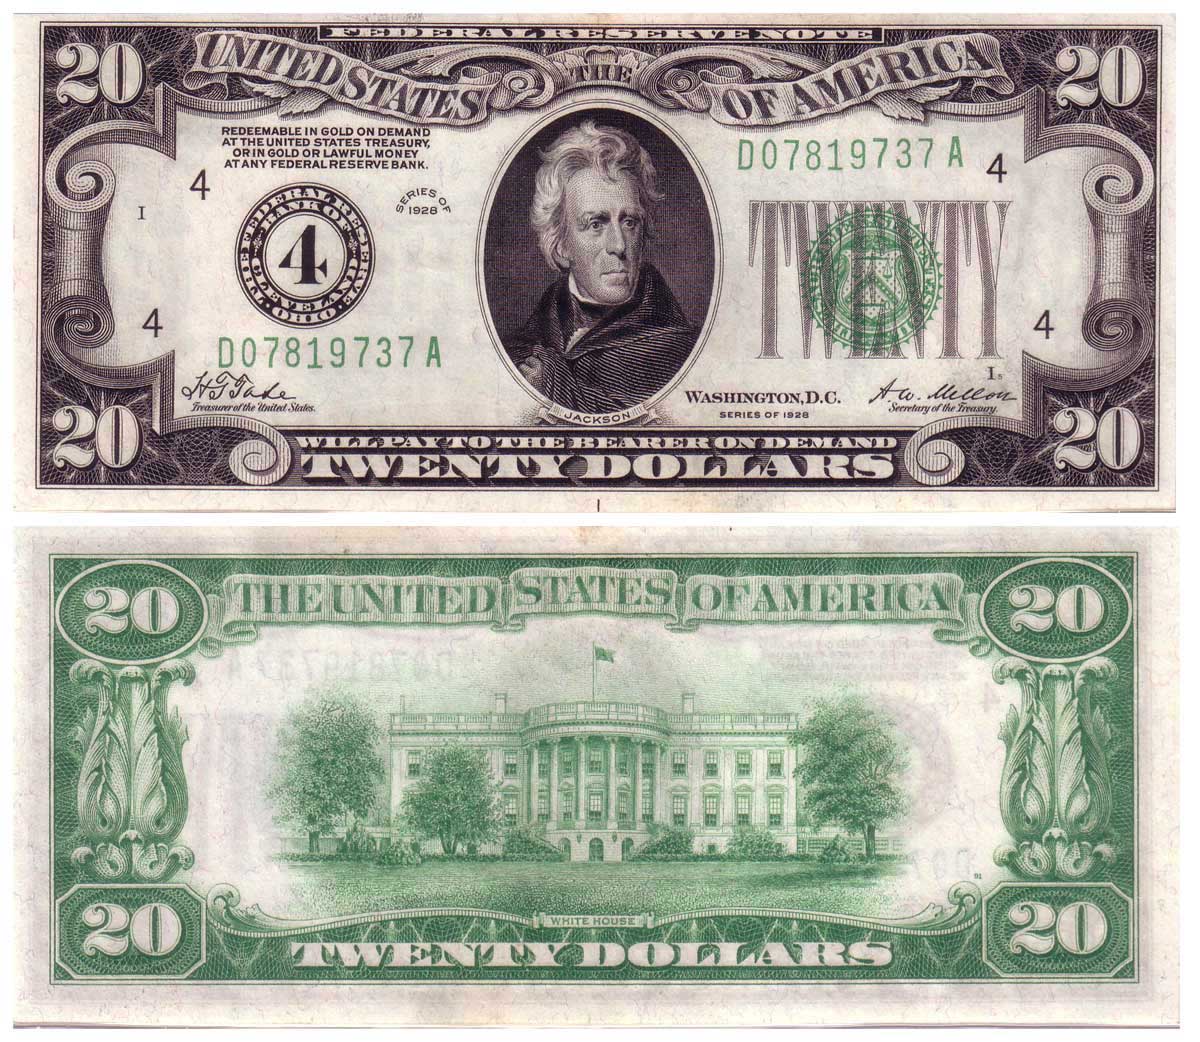 1950 20 dollar bill serial number lookup